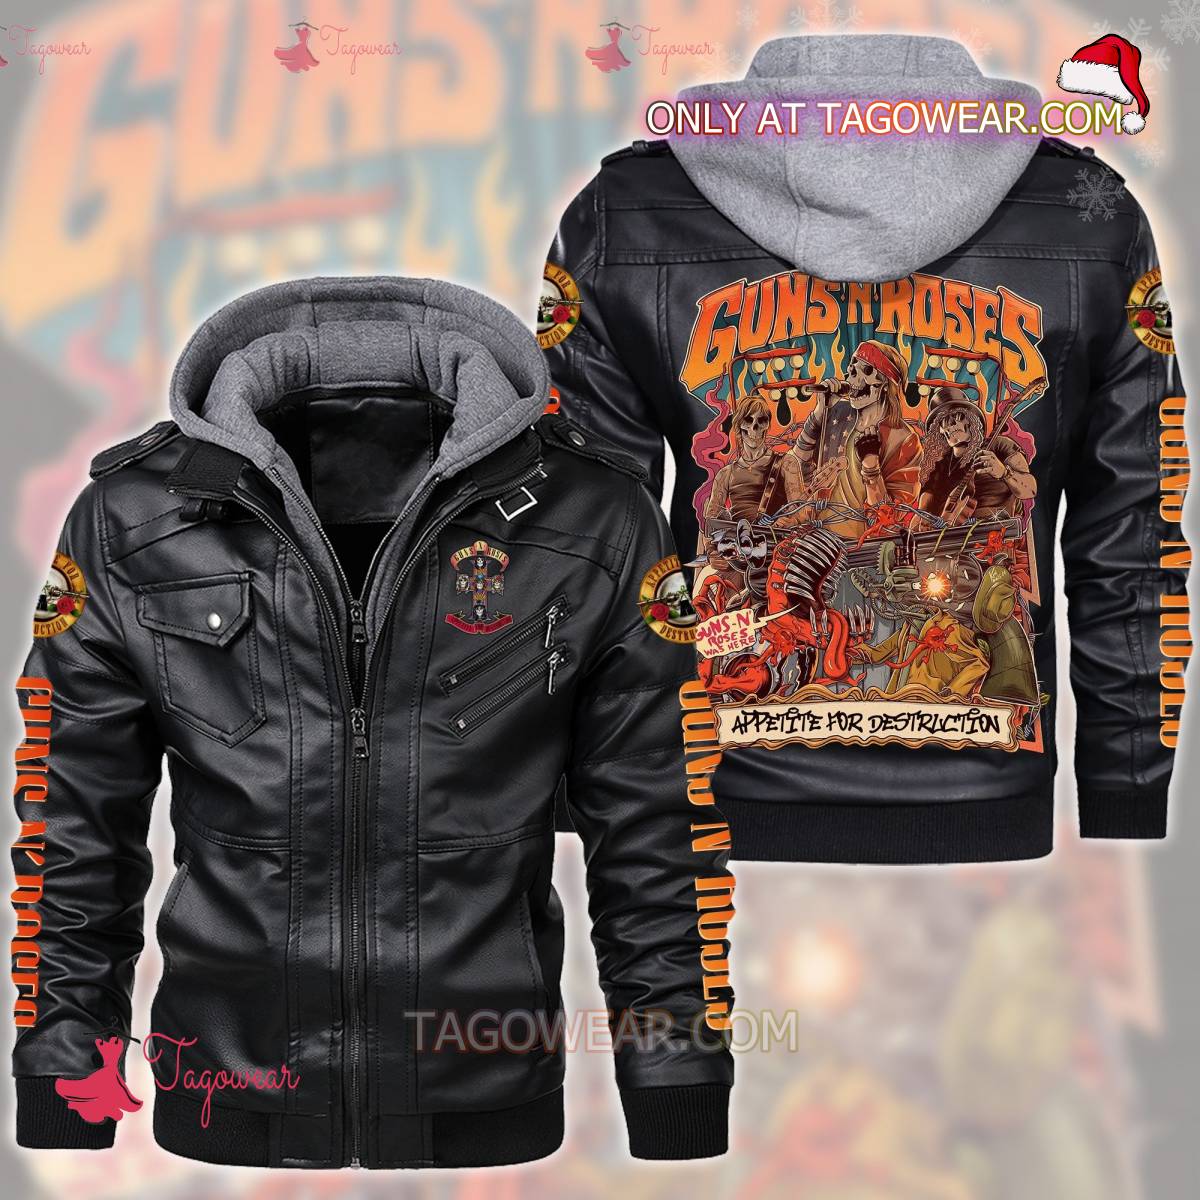 Guns N' Roses Appetite For Destruction Leather Jacket